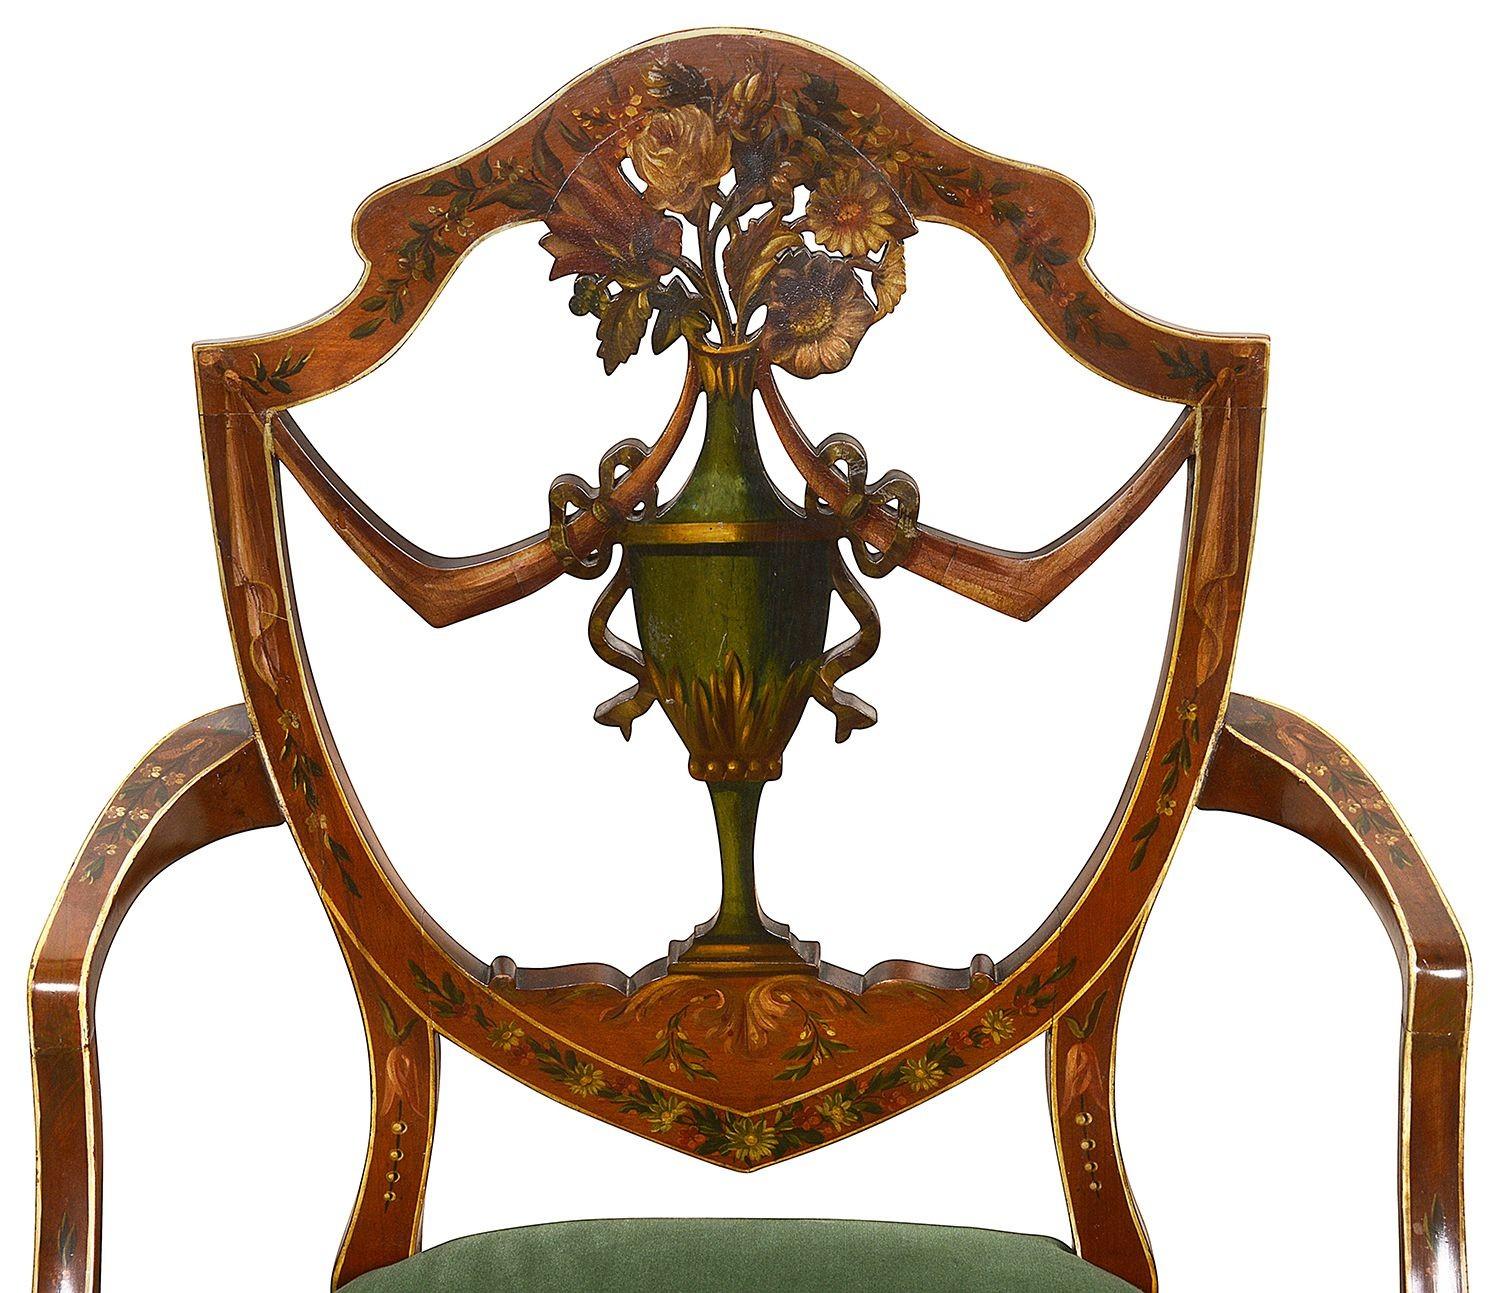 


Un fauteuil à dossier bouclier de très bonne qualité de la fin du 19e siècle, de style Sheraton, avec une magnifique décoration florale classique peinte à la main, des sièges rembourrés en velours et reposant sur d'élégants pieds fuselés carrés.